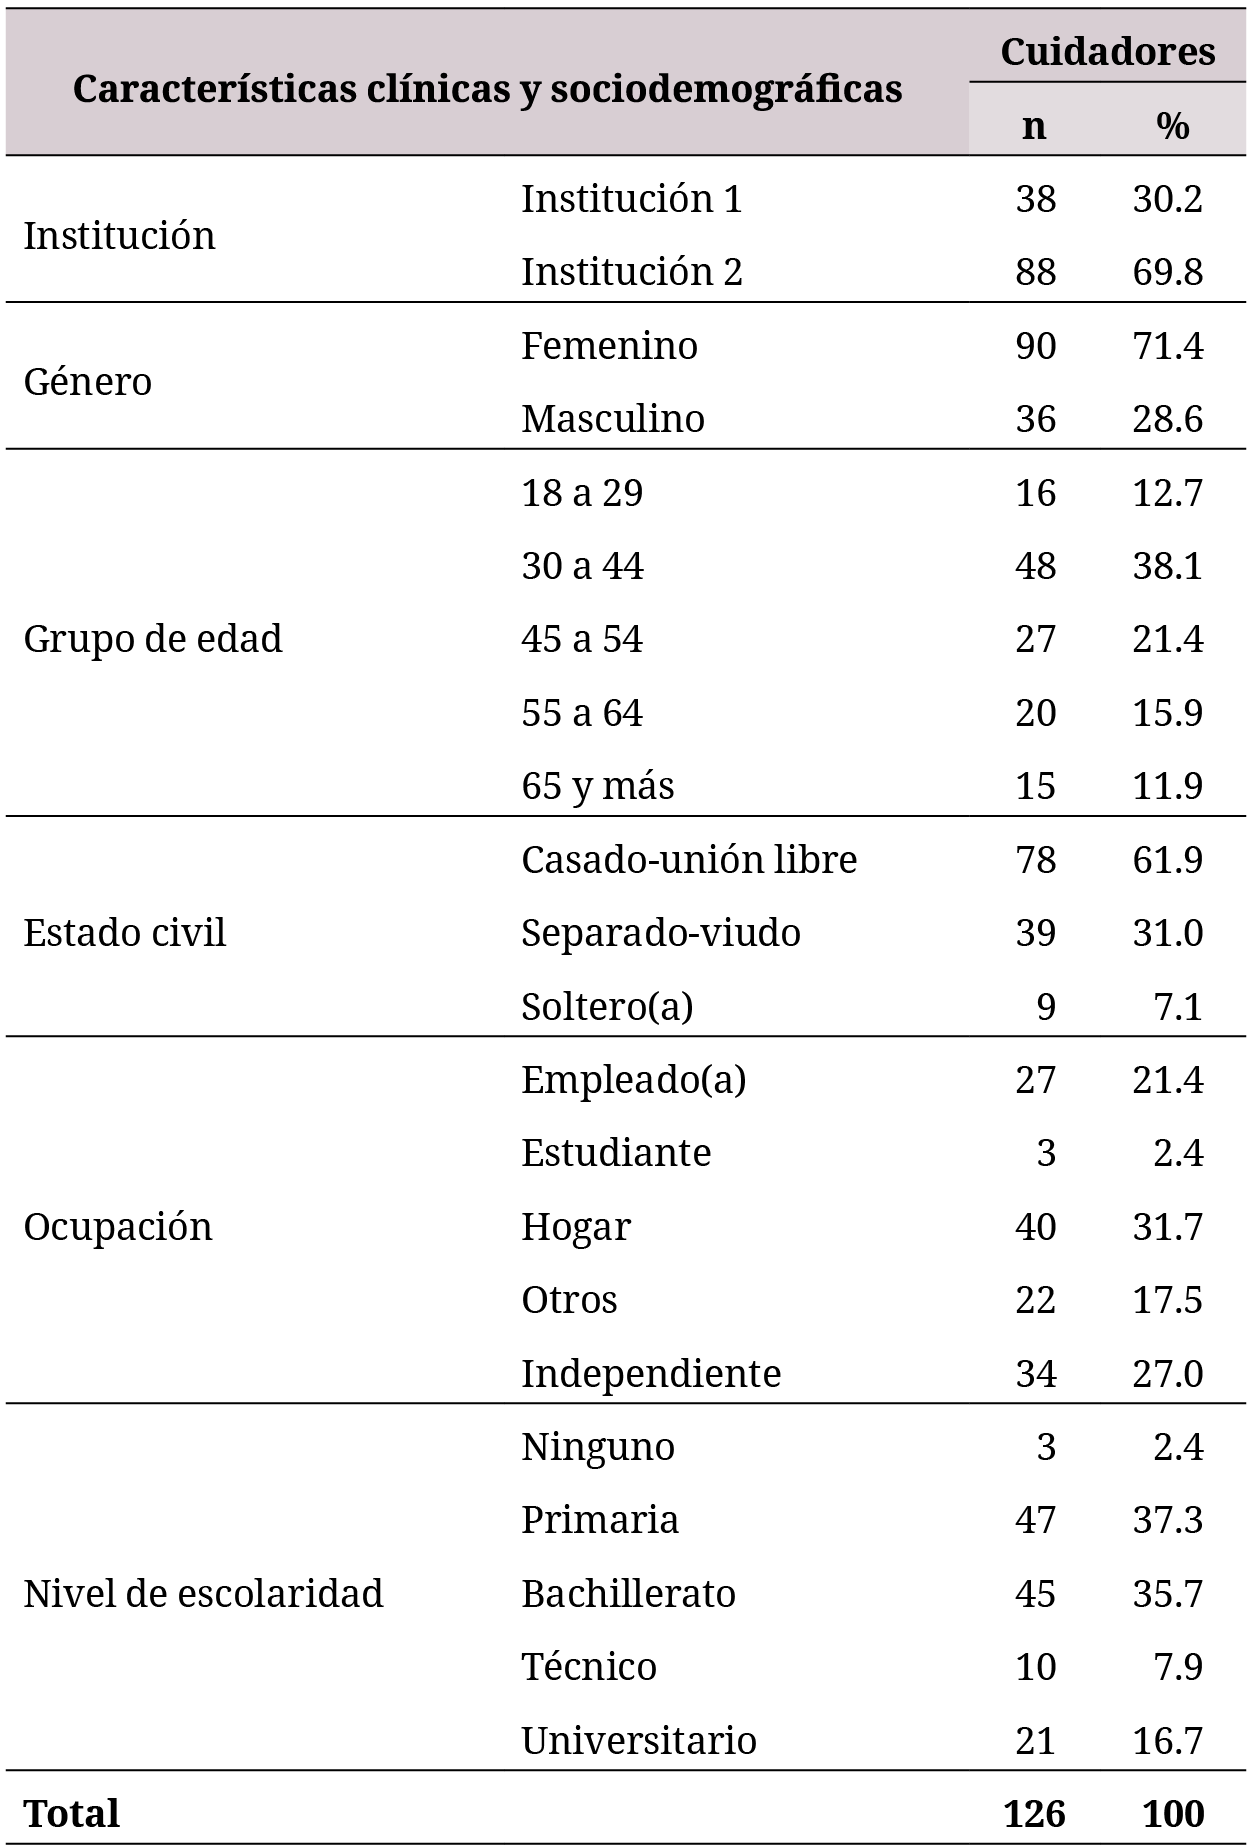 Características sociodemográficas de los cuidadores de pacientes crónicos